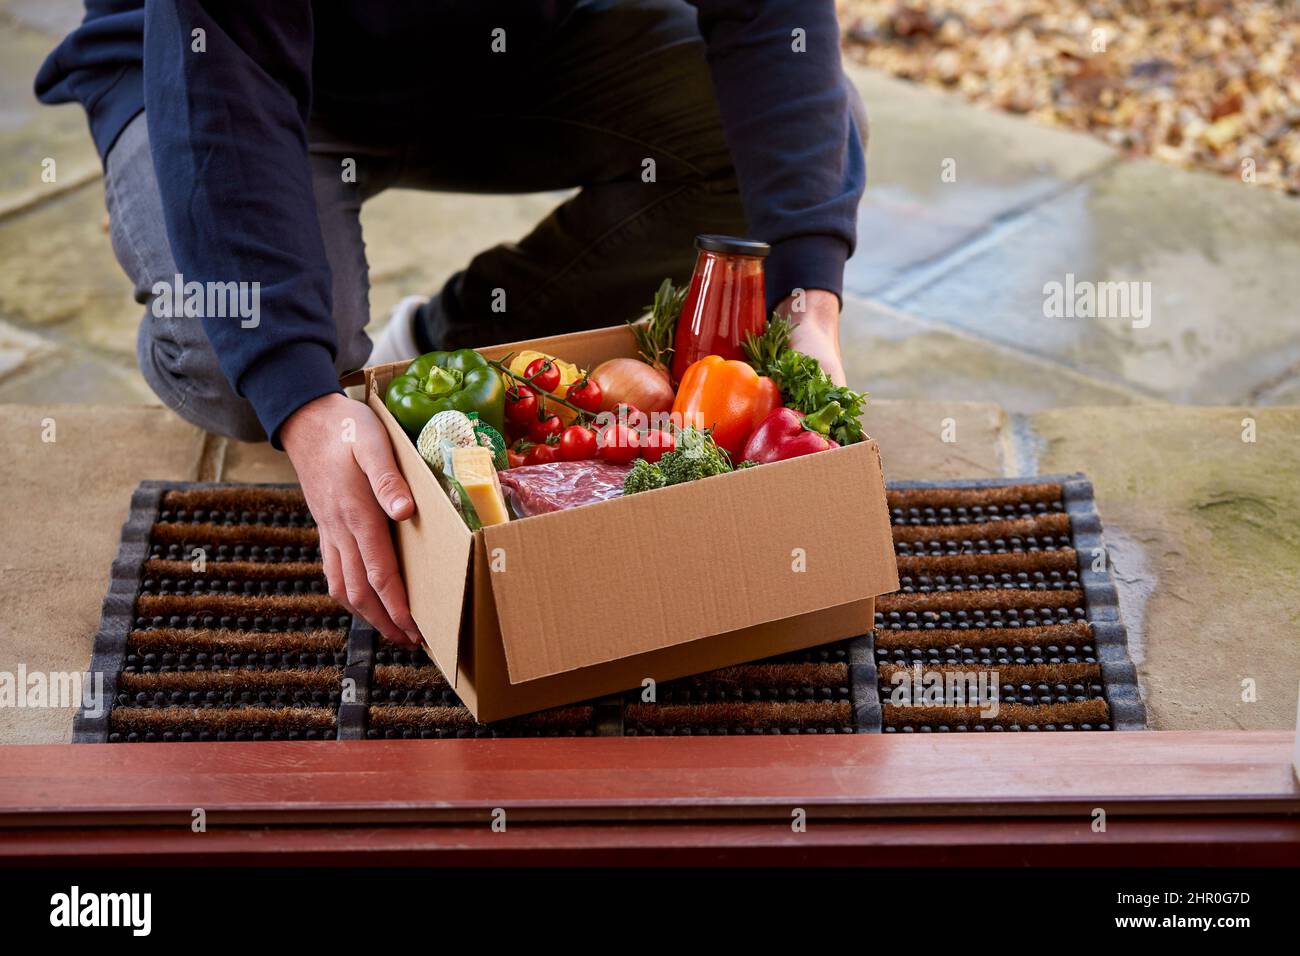 Mann Liefert Box Mit Frischen Zutaten Für Online-Mahlzeit Lebensmittel Rezept Kit Nach Hause Vor Der Haustür Stockfoto